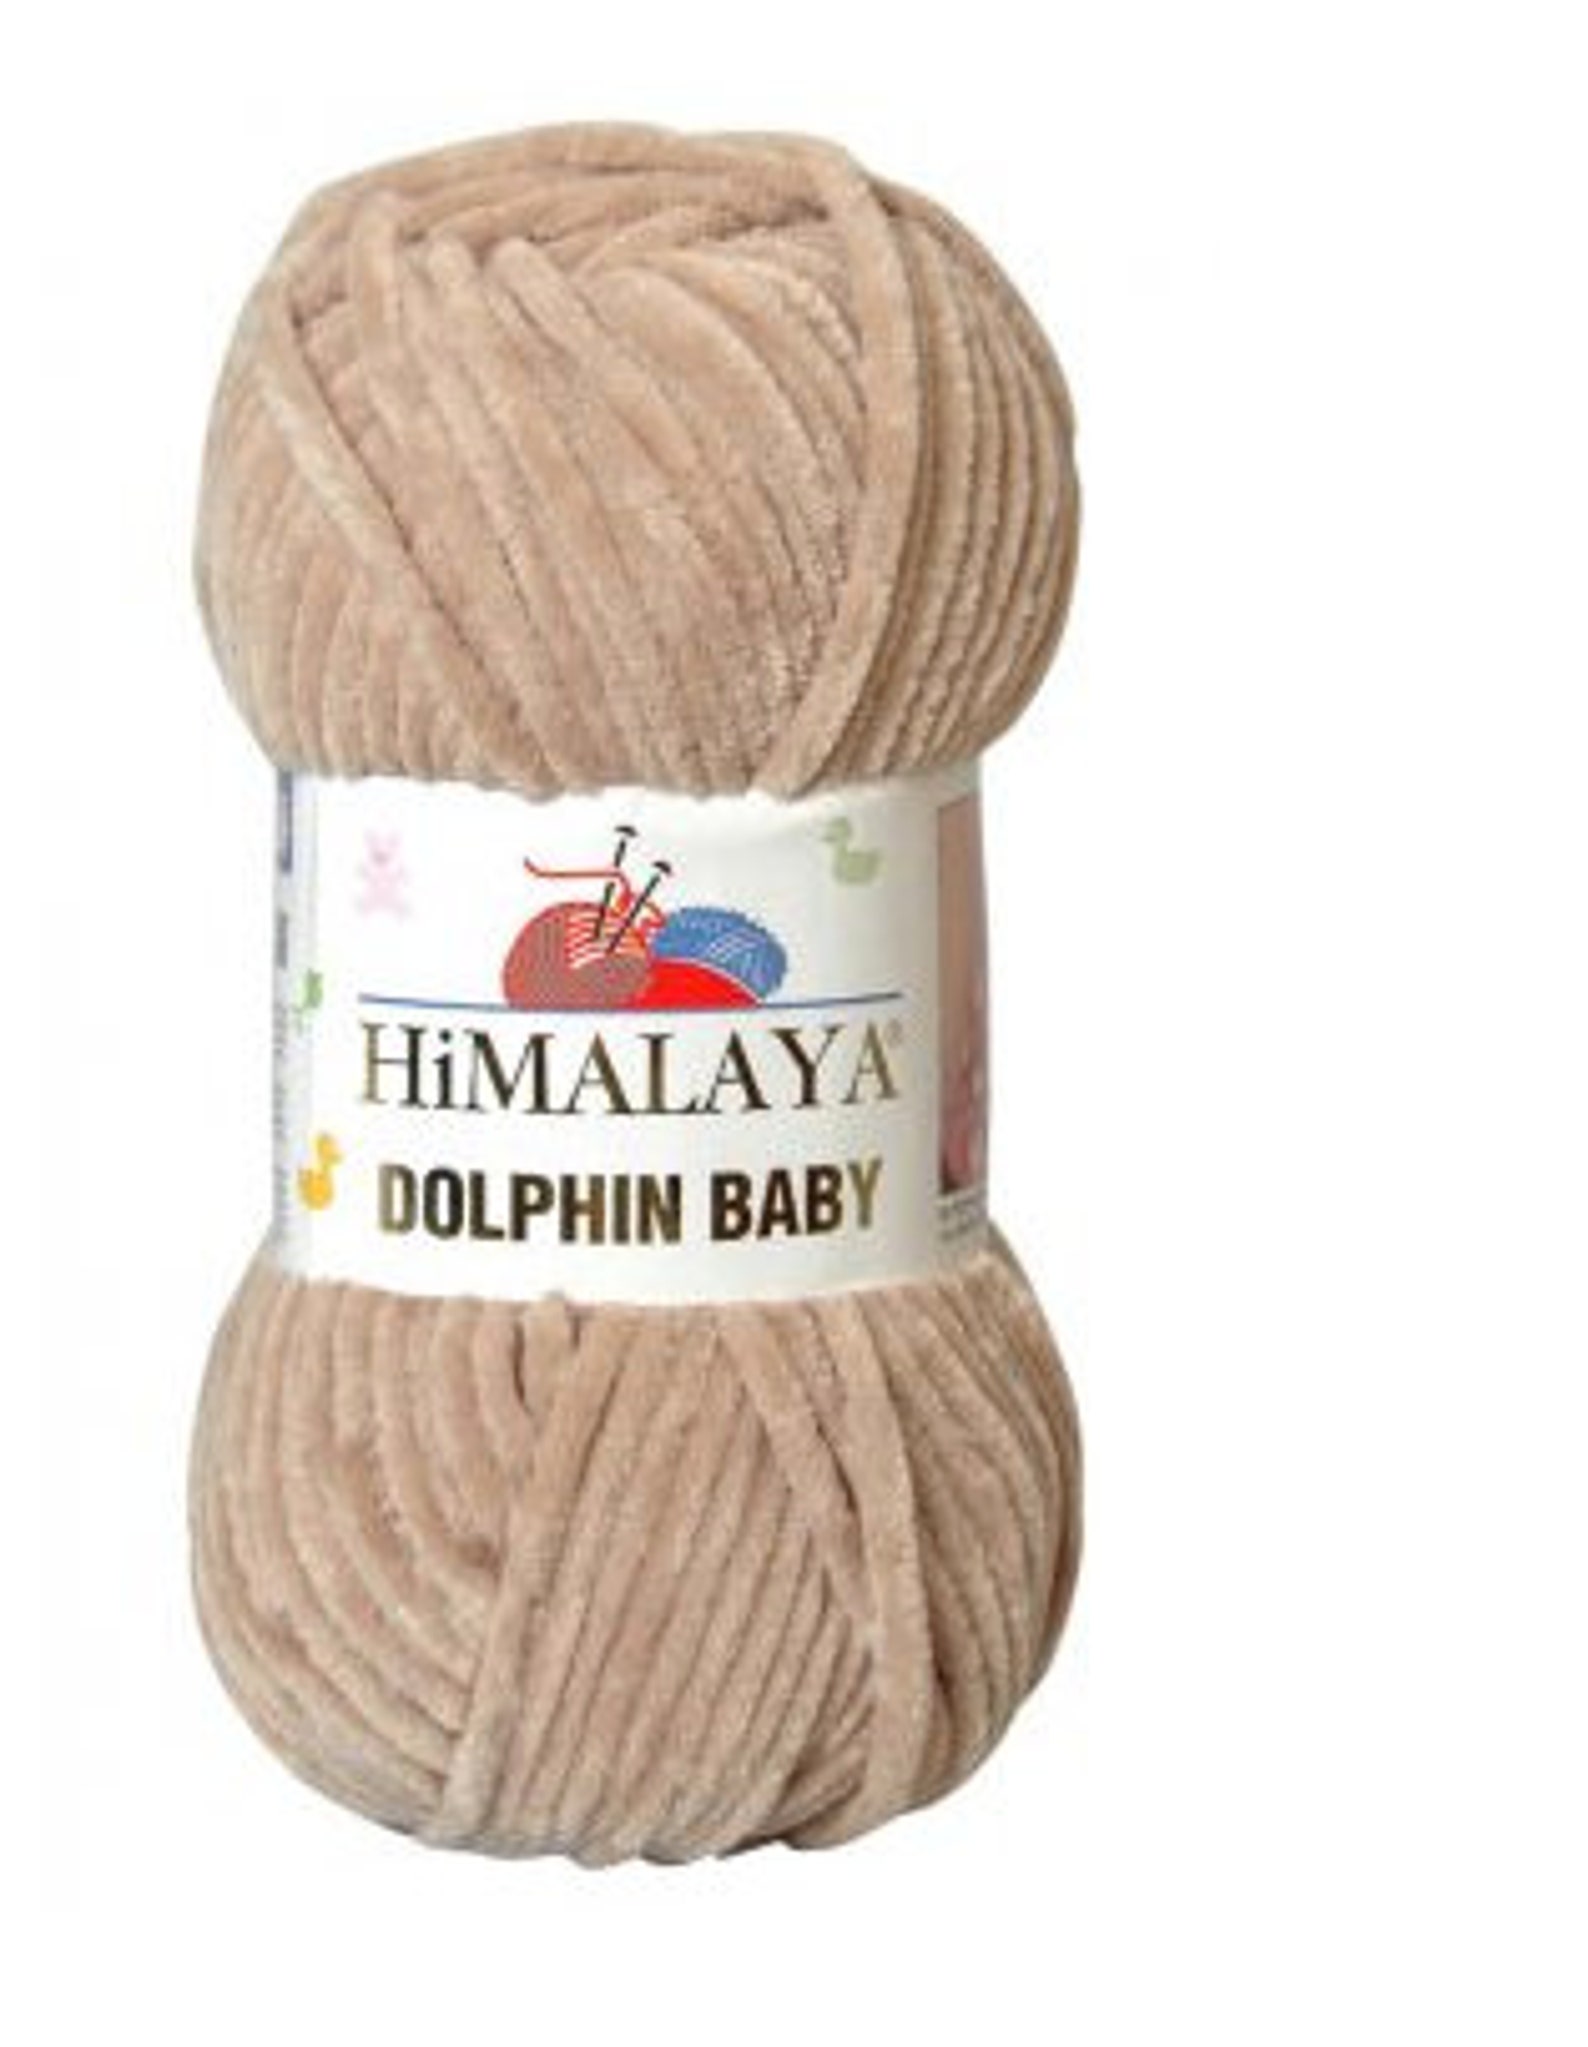 Купить пряжу himalaya. Пряжа Хималая Dolphin Baby. Пряжа Himalaya Dolphin Baby 80317. Himalaya Dolphin Baby 80365. Пряжа Хималая Dolphin Baby цвета.